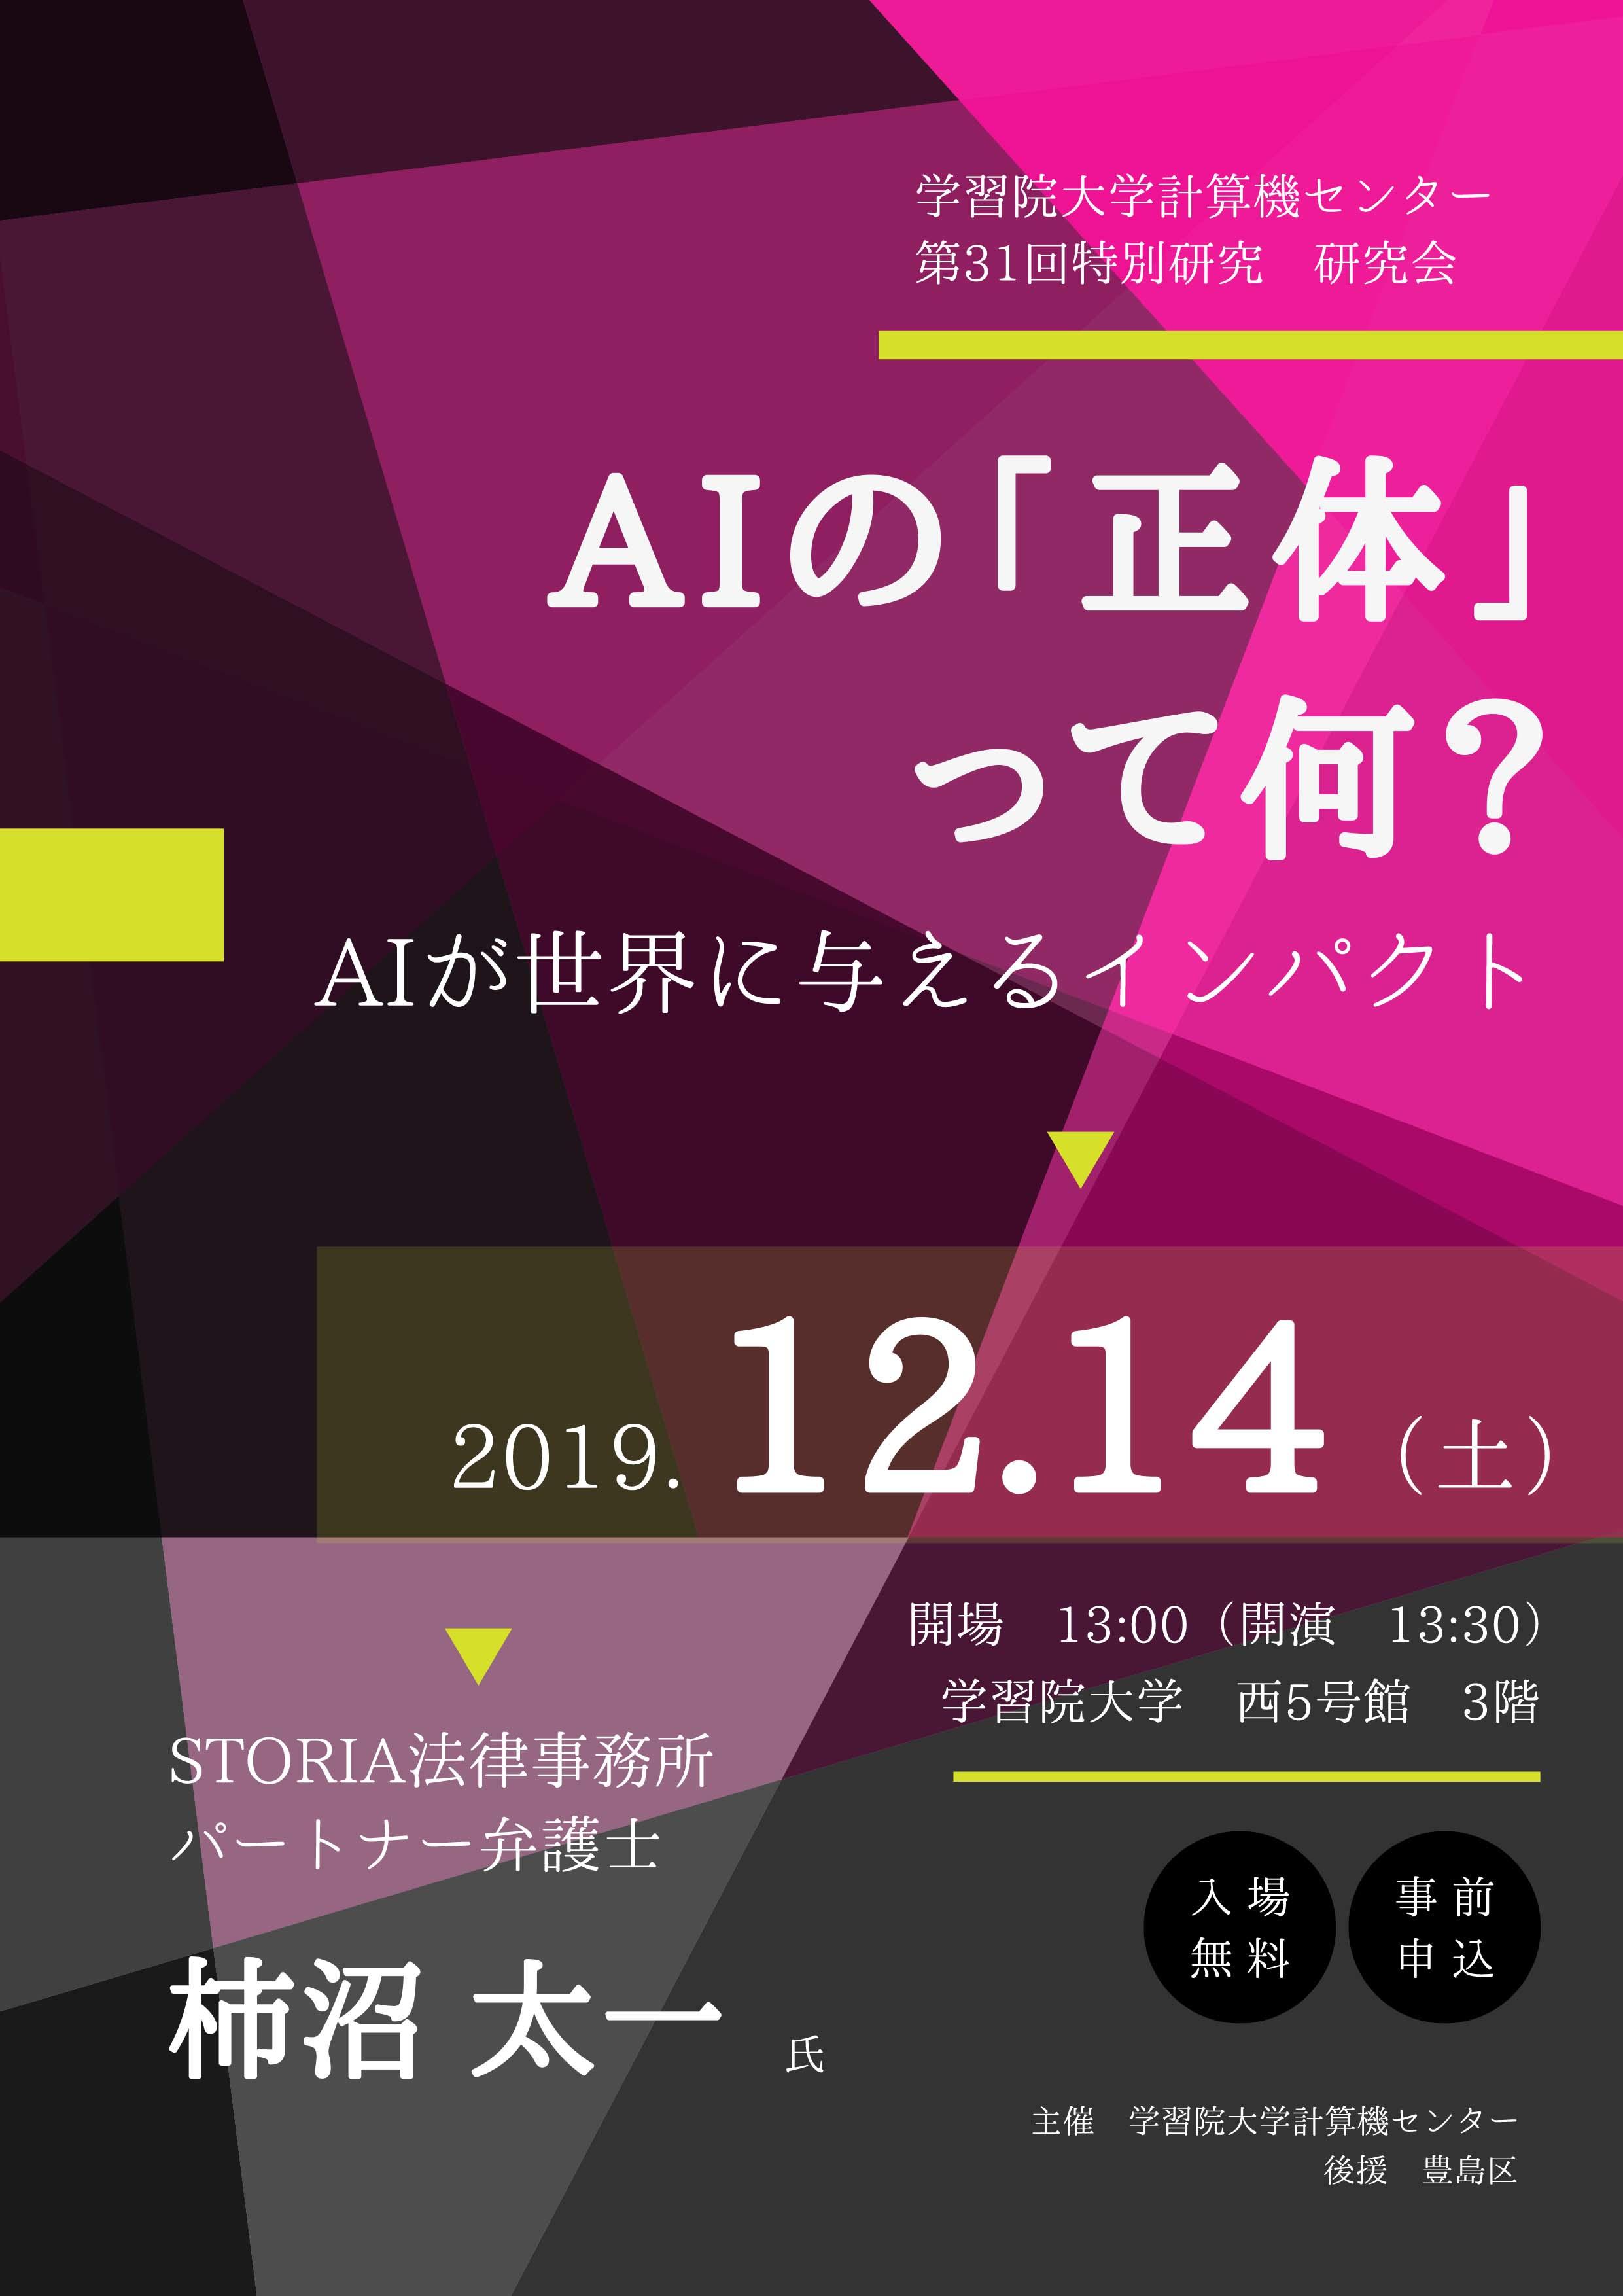 学習院大学が12月14日に公開講座「AIの『正体』って何？ -- AIが世界にもたらすインパクト --」を開催